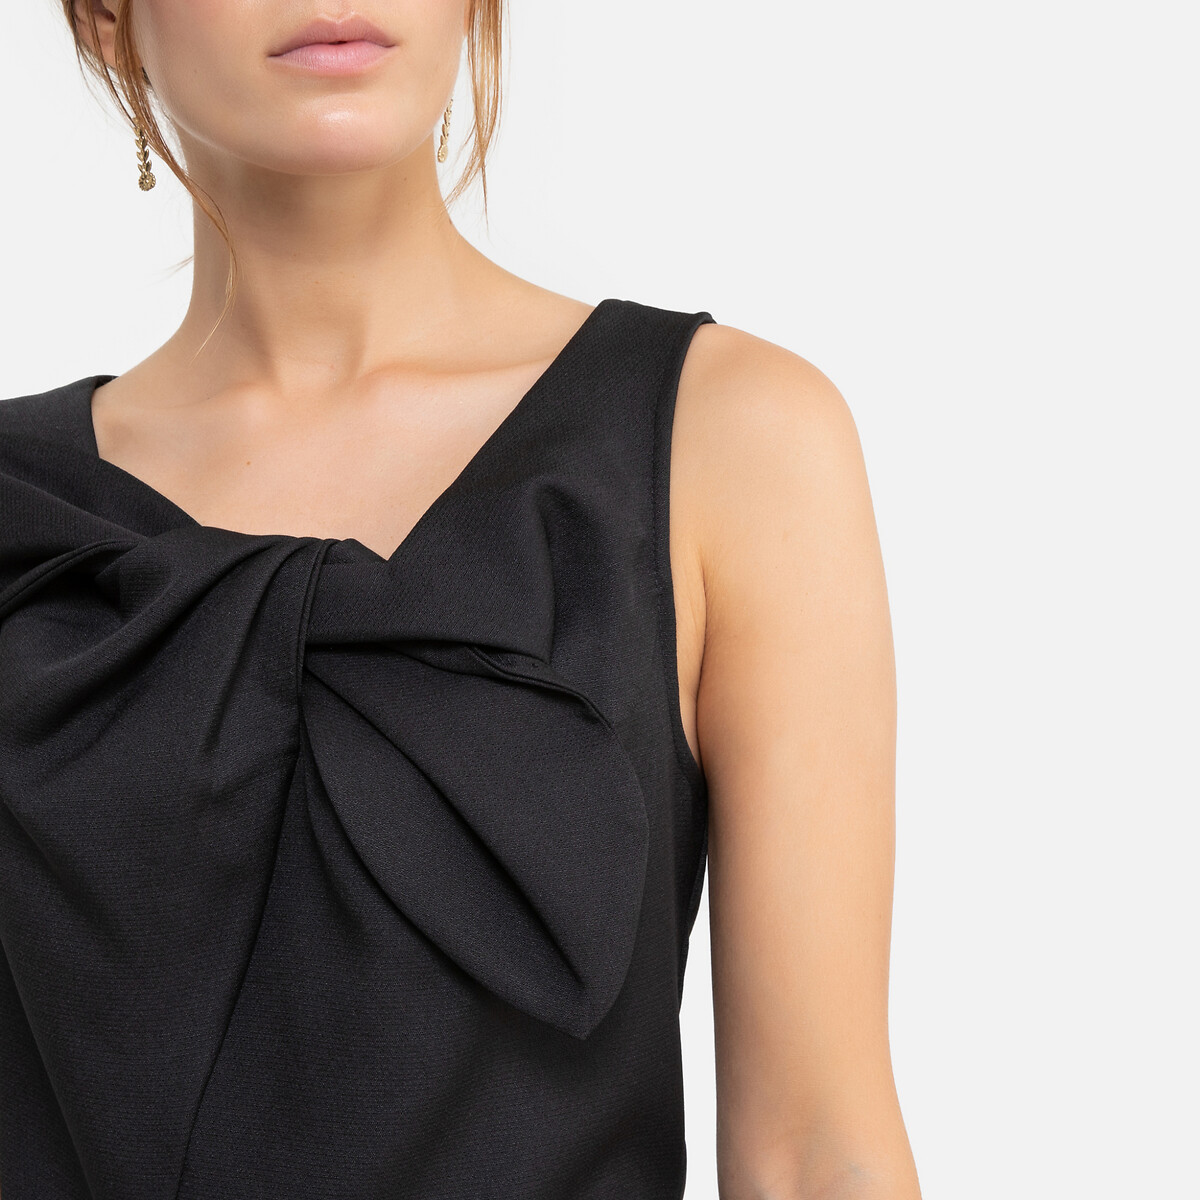 Платье La Redoute Короткое расклешенное бантик спереди XS черный, размер XS - фото 3